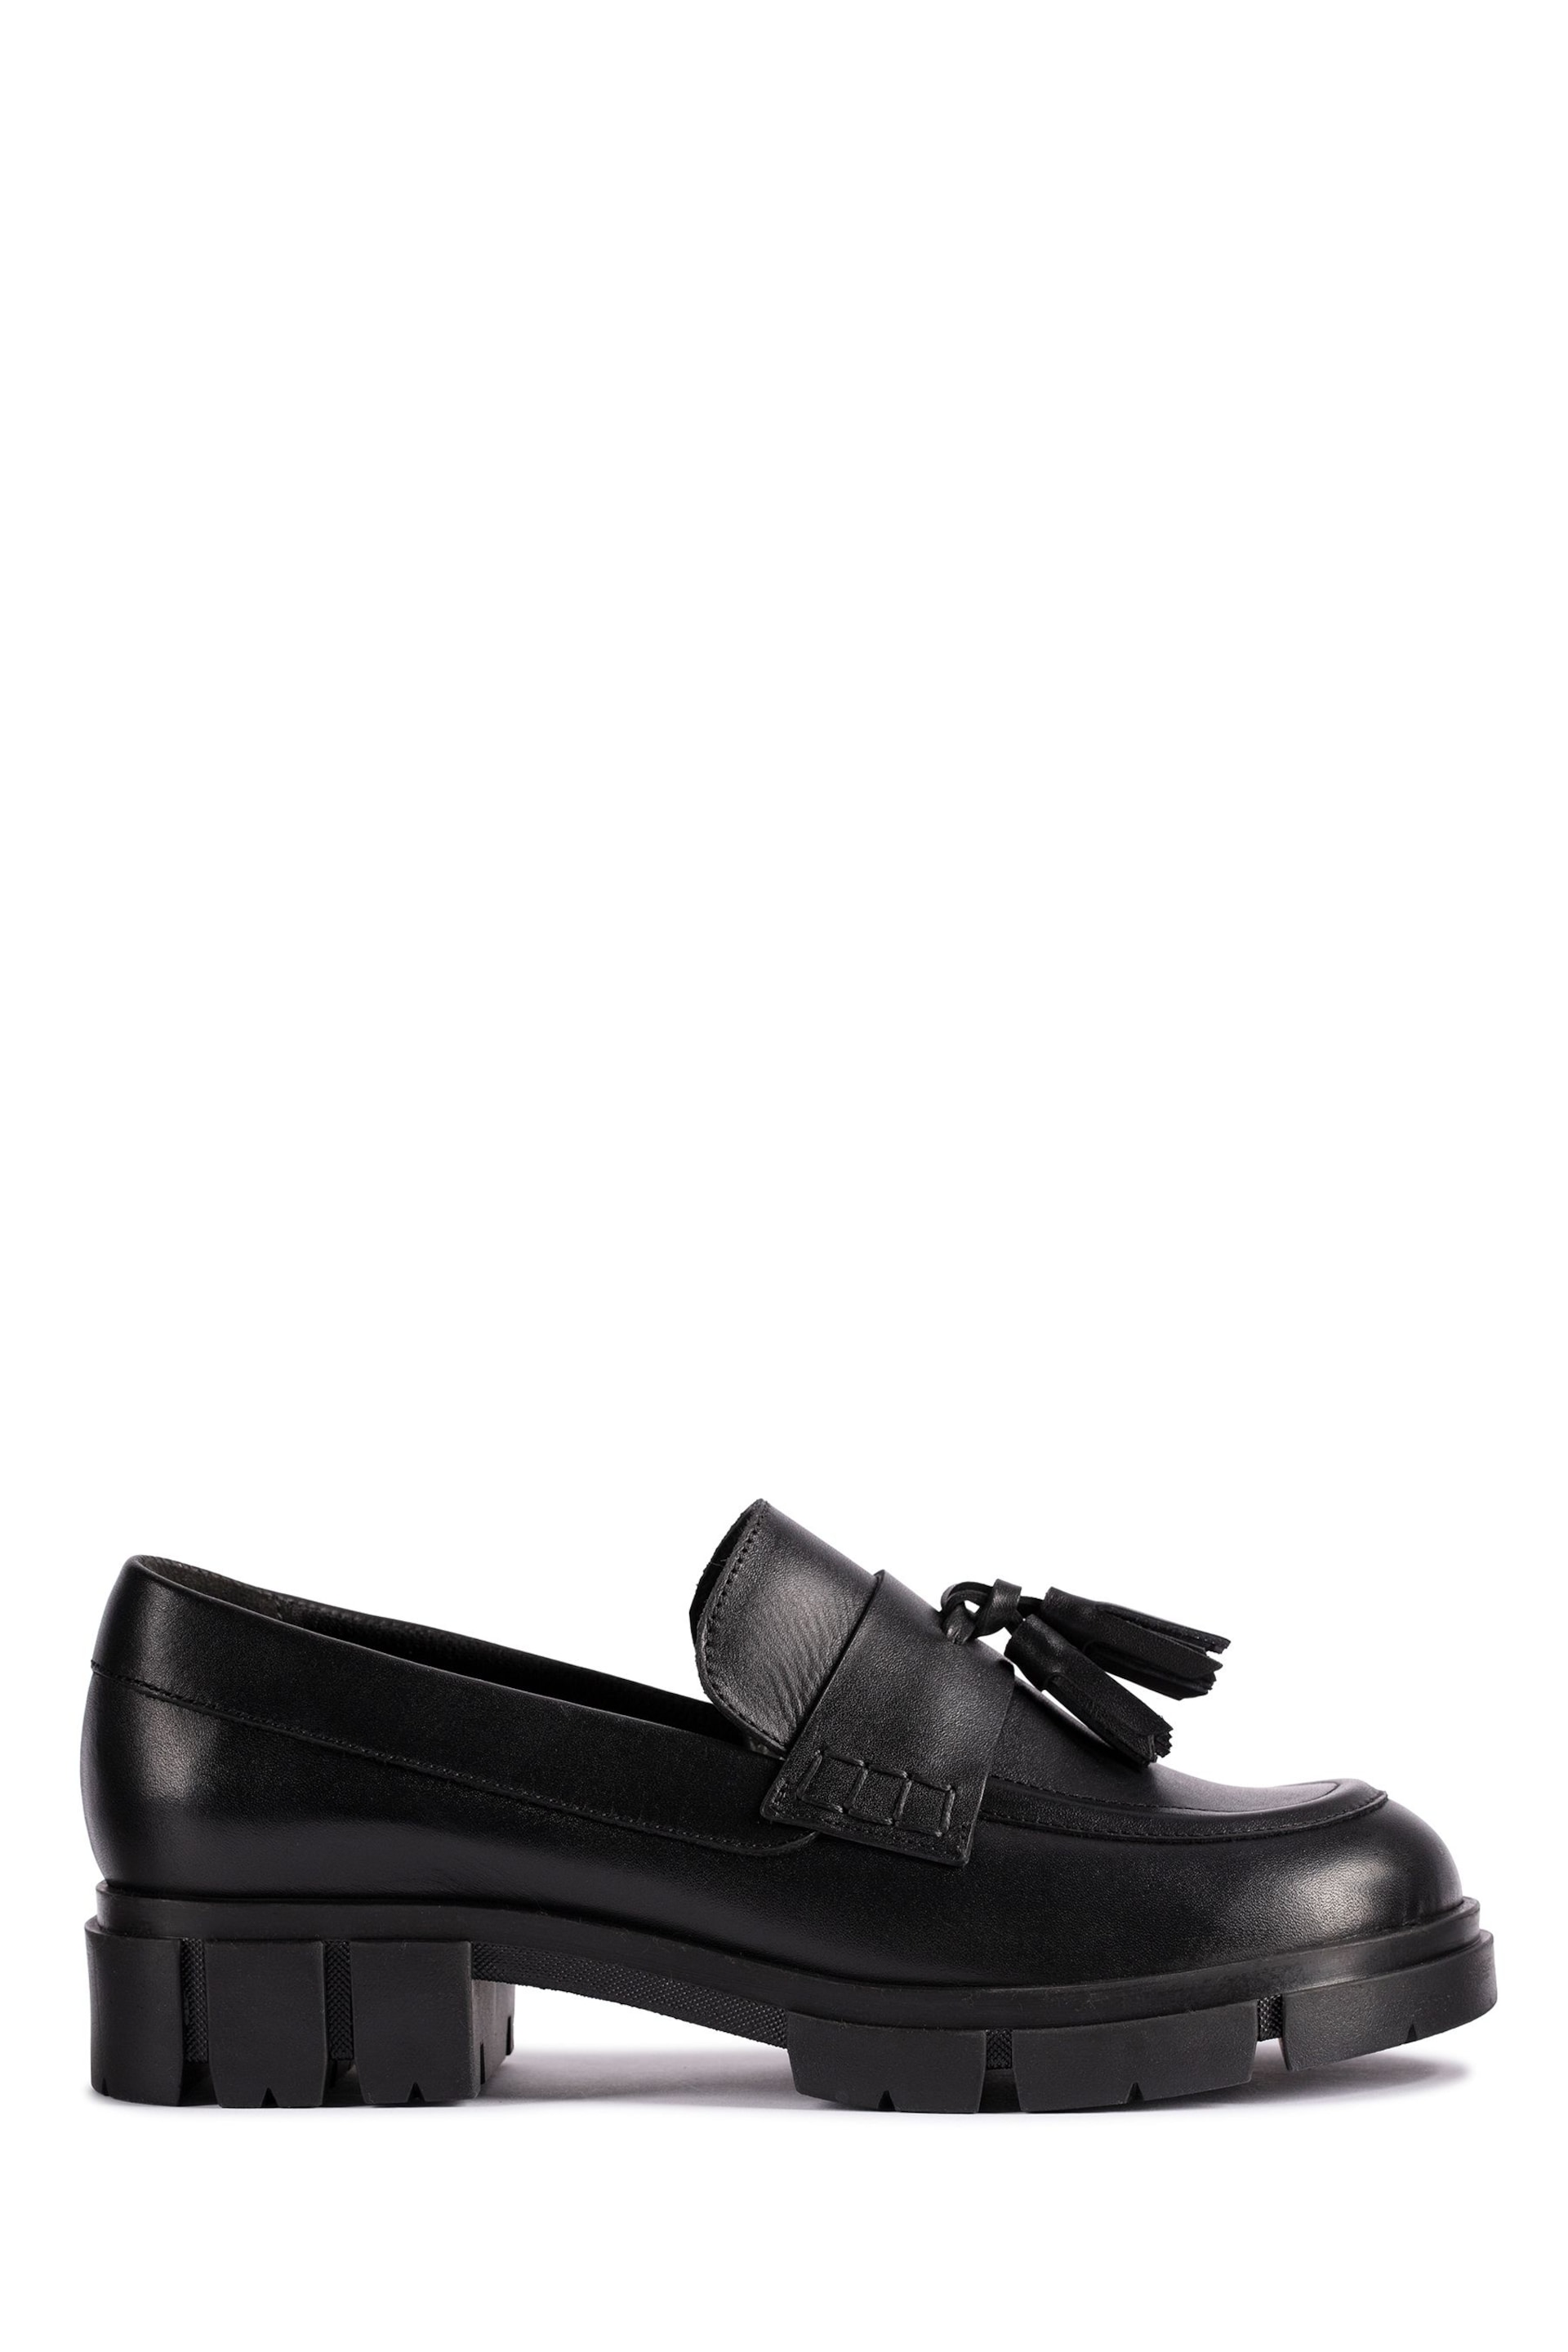 Clarks Black Teala Loafer Shoes - Image 1 of 7